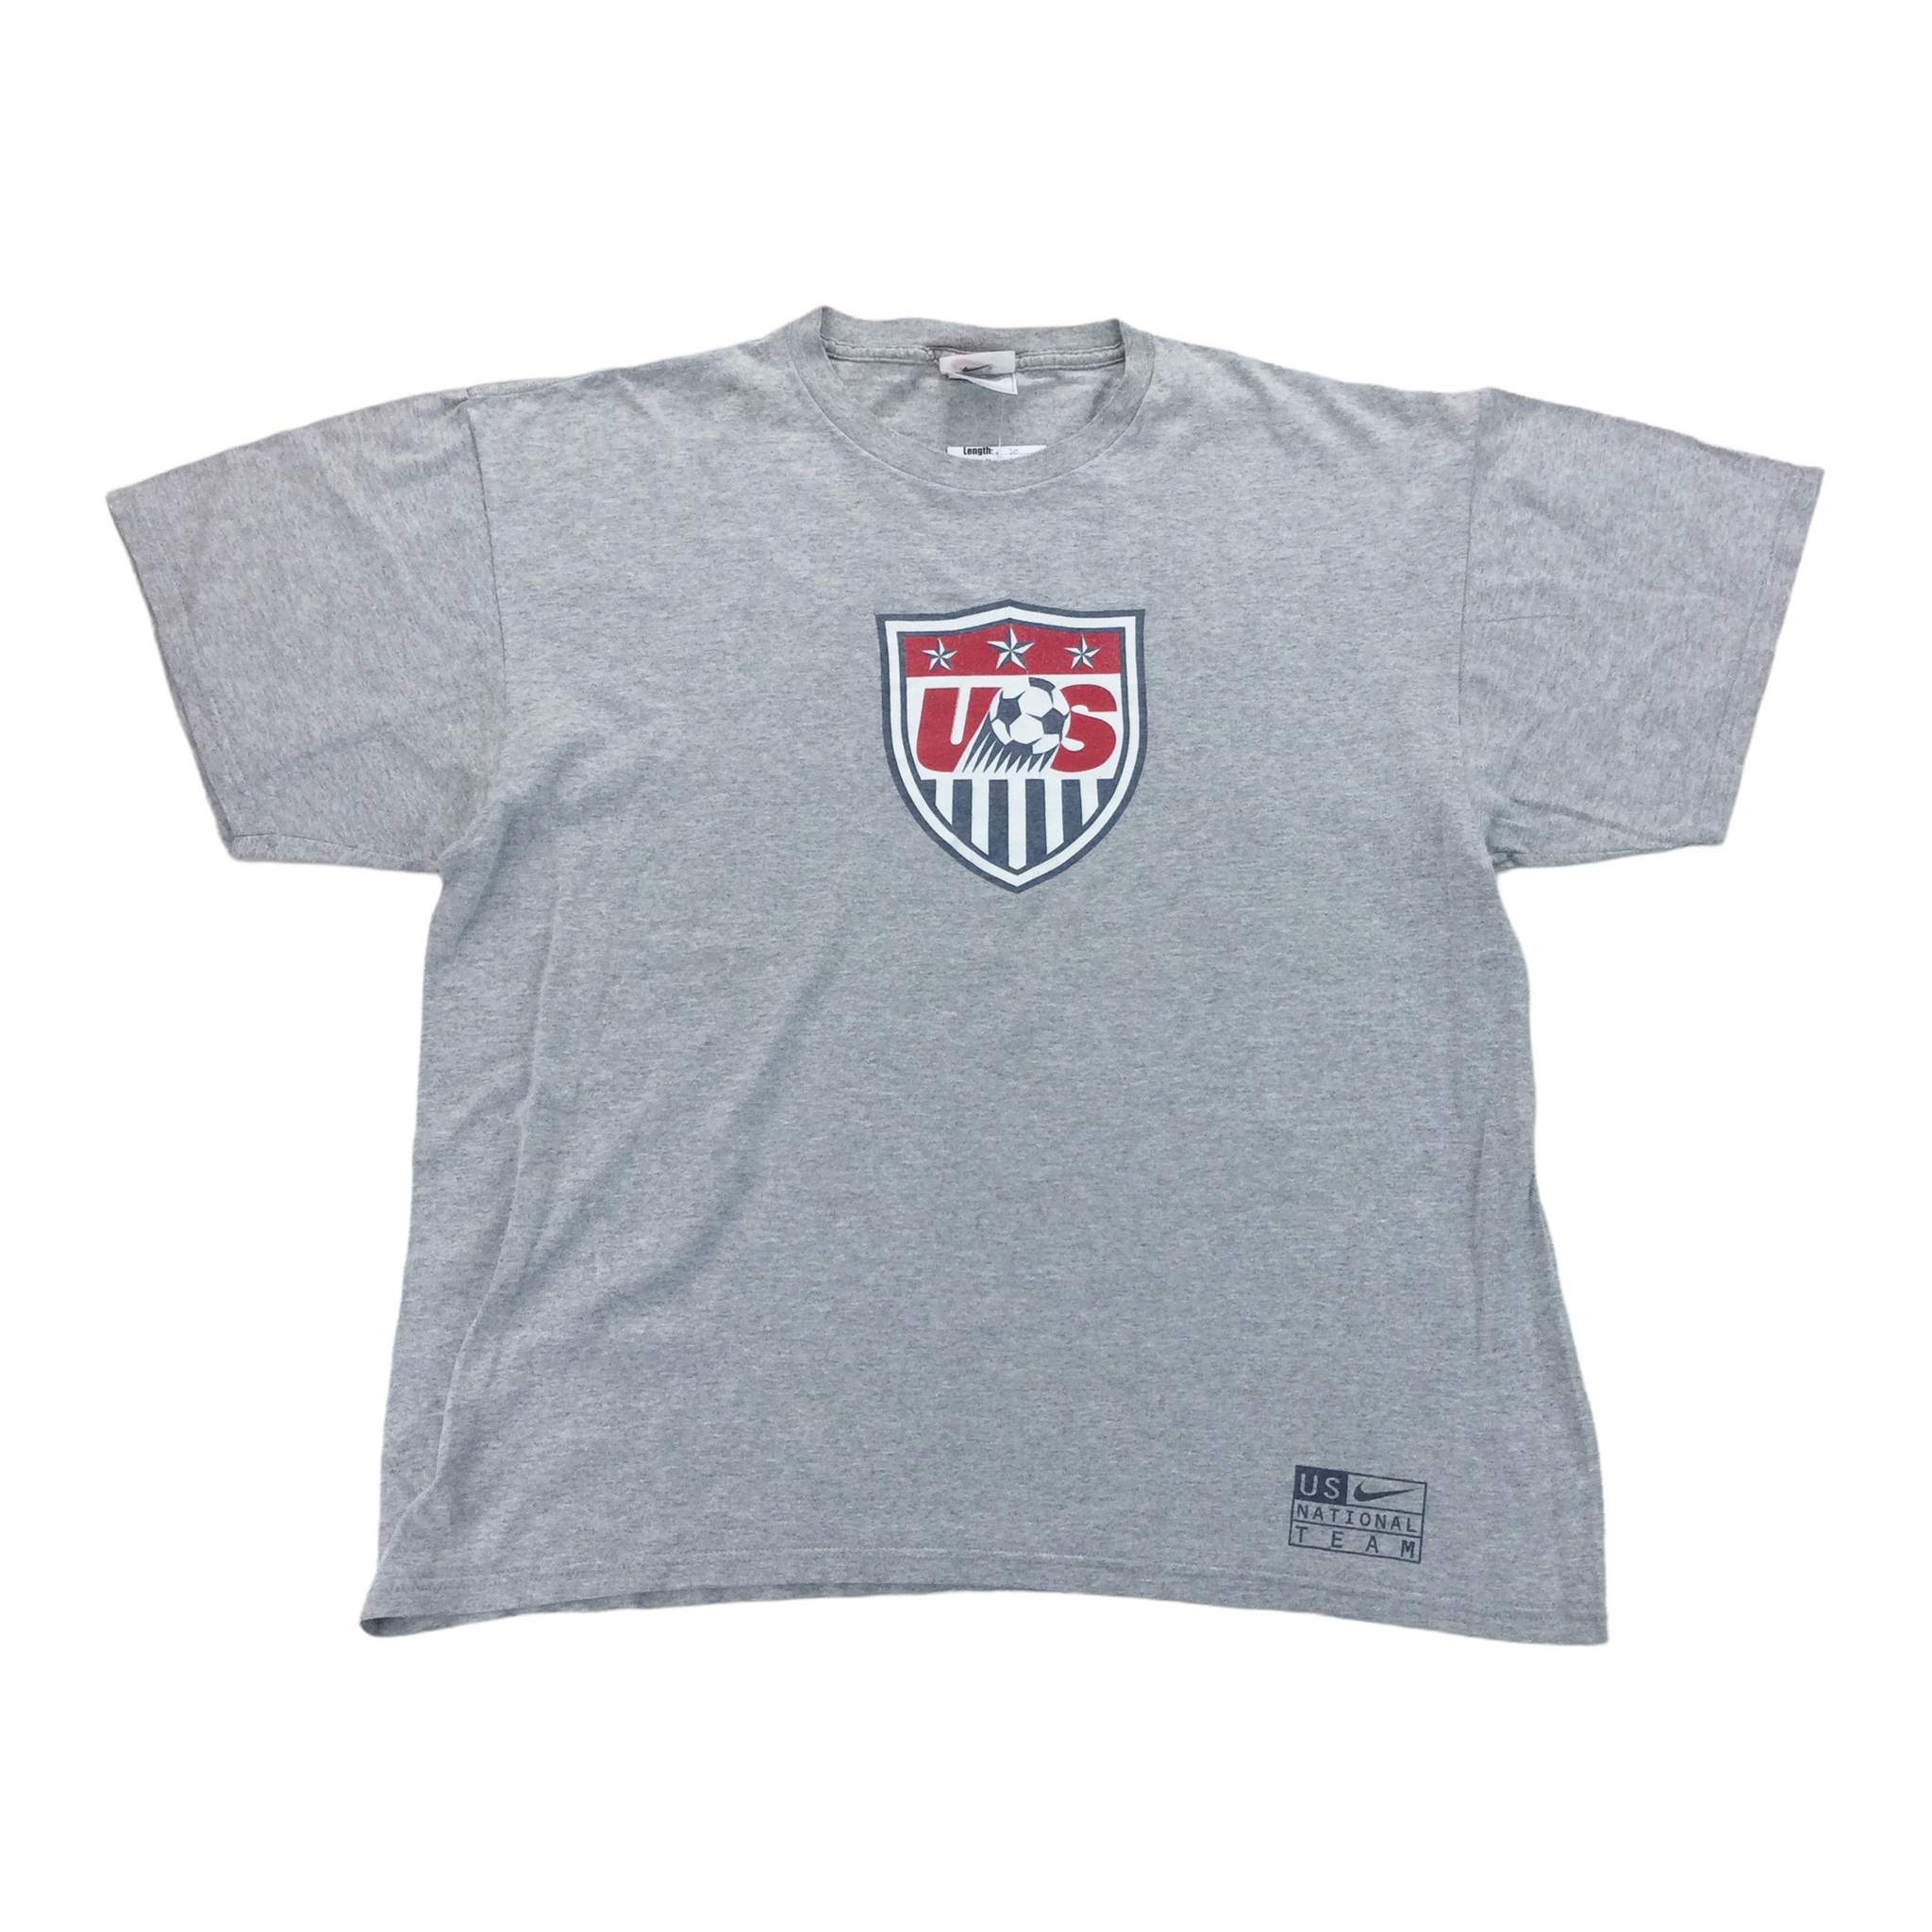 US Football Team T-Shirt - Large | Premium Vintage